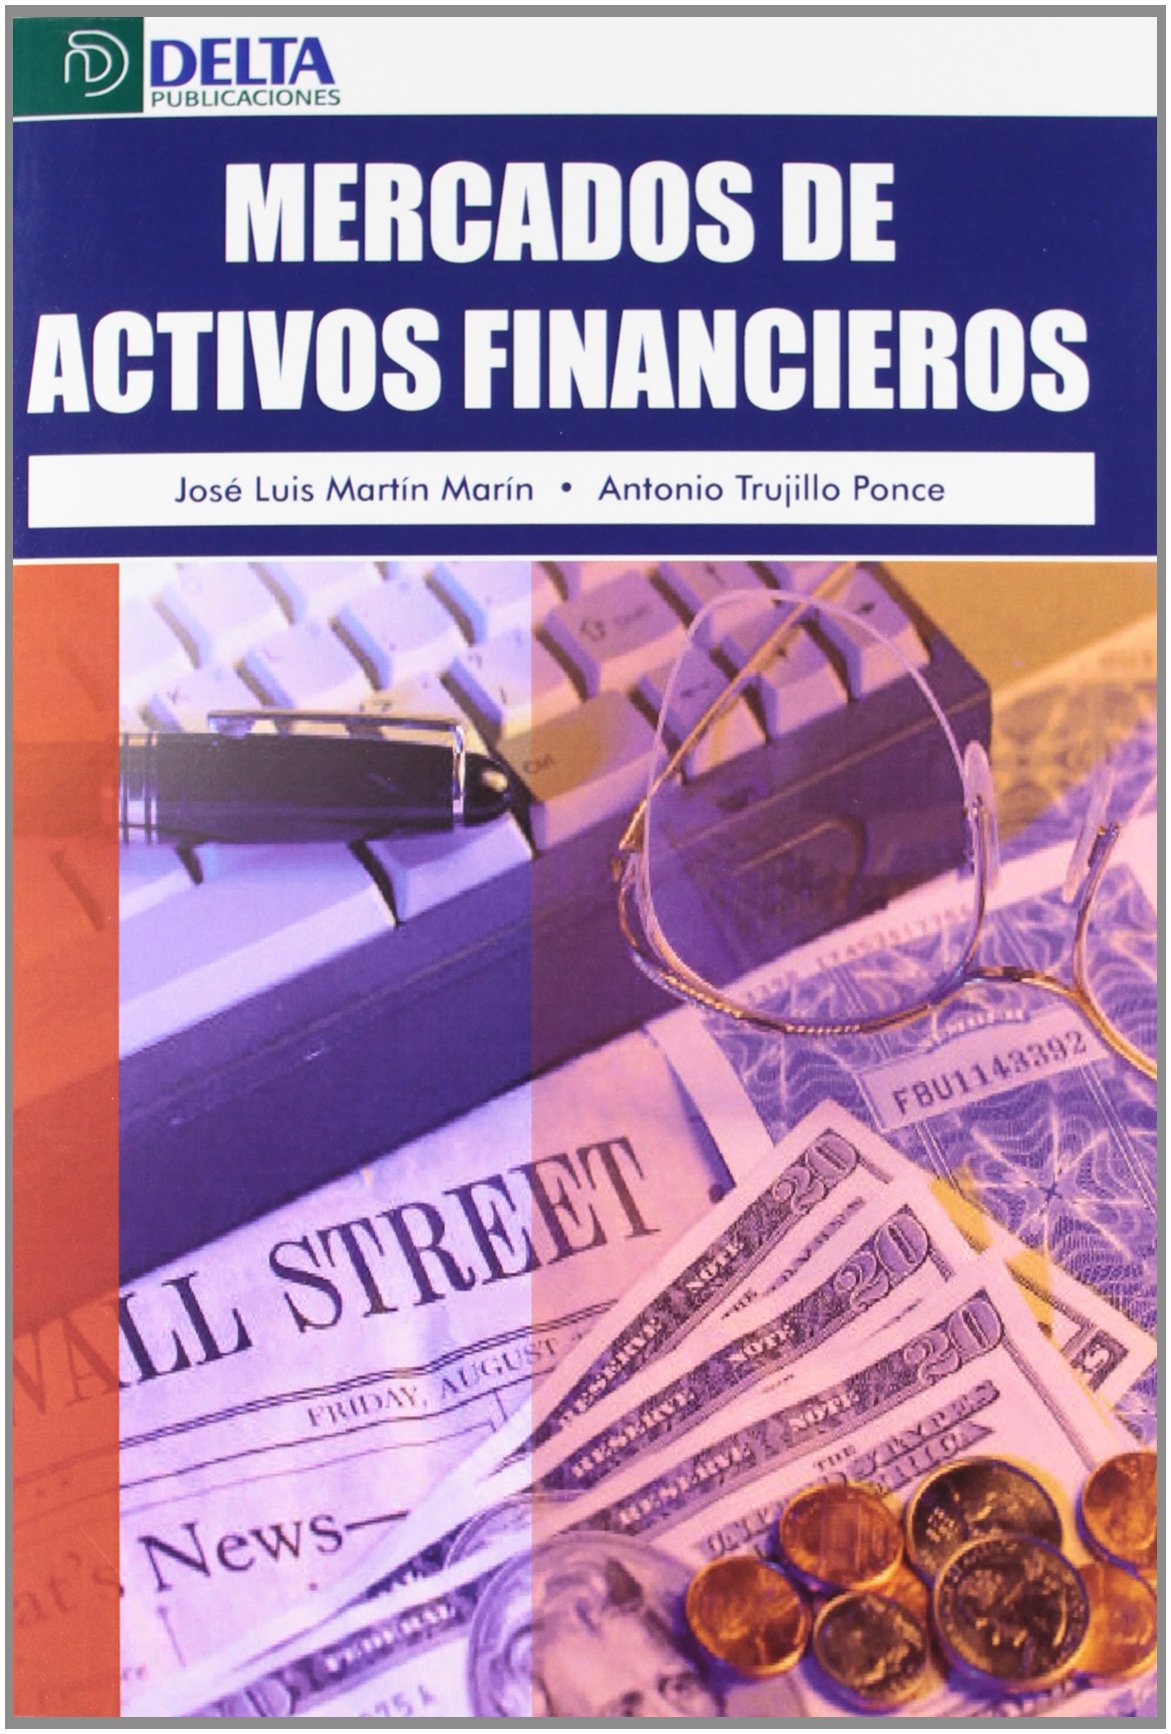 Imagen de portada del libro Mercados de activos financieros